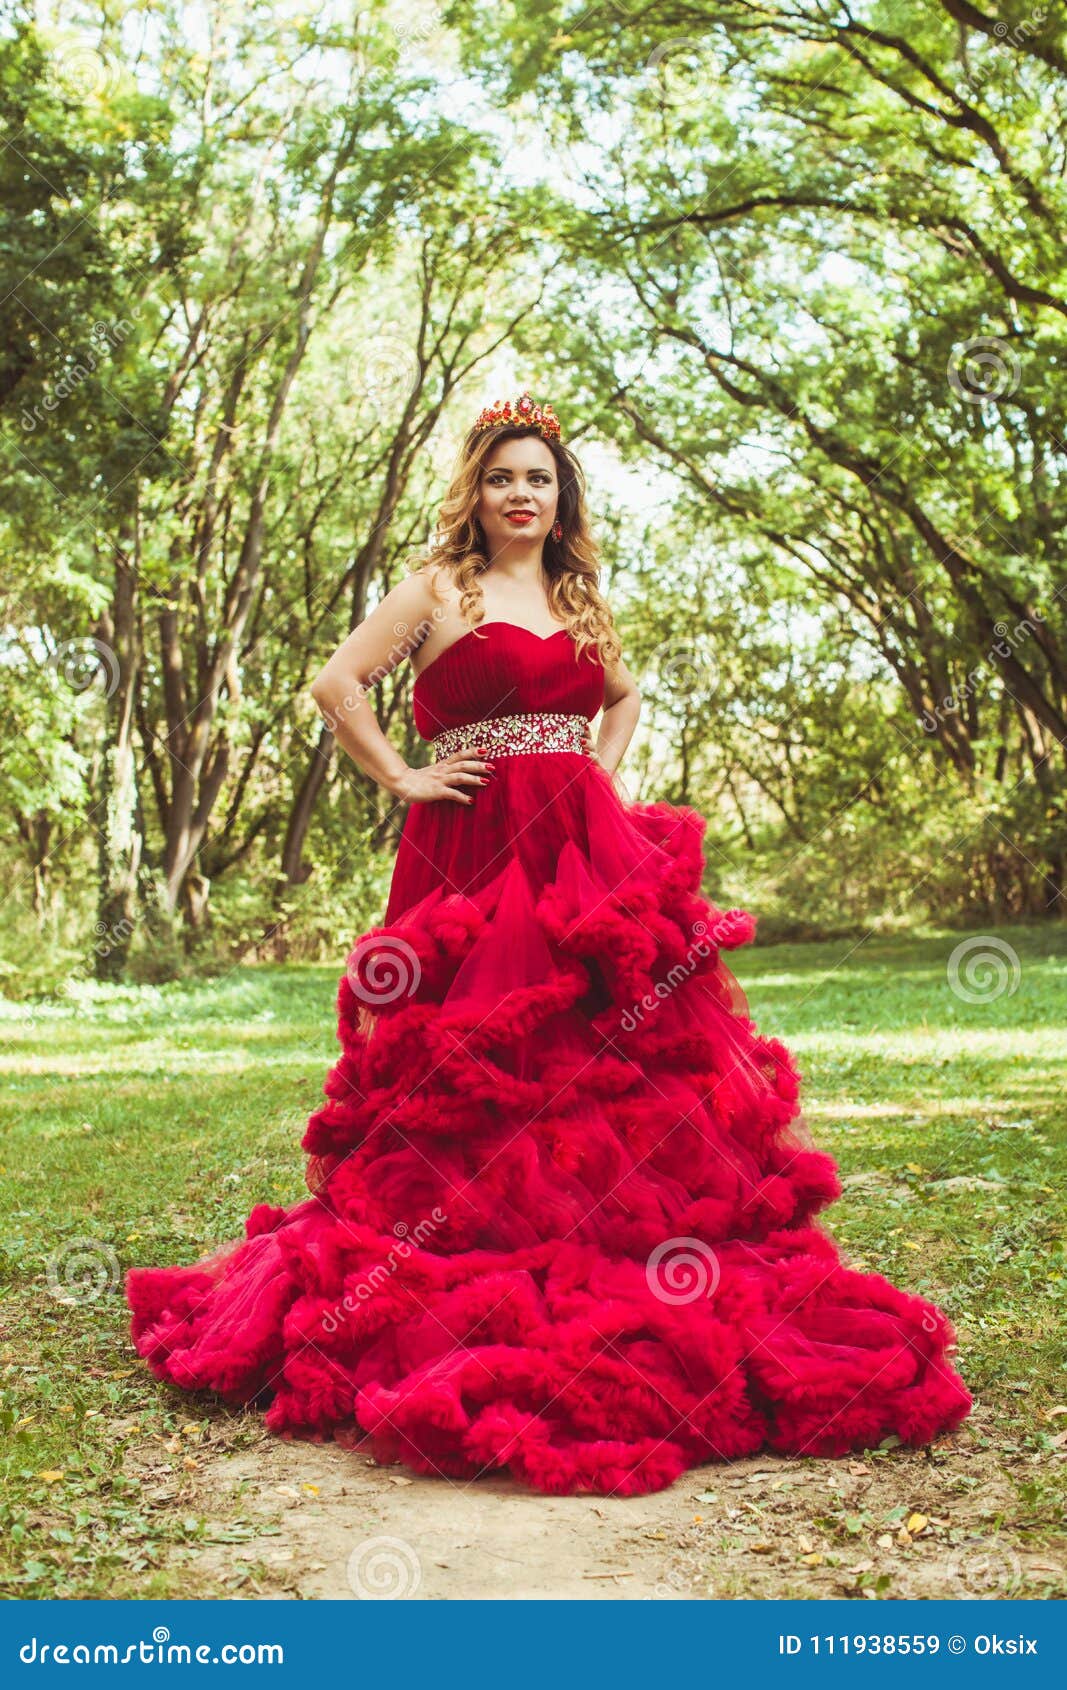 Princesa Con La Corona En Rojo Nublado Imagen de archivo - Imagen de modelo, 111938559